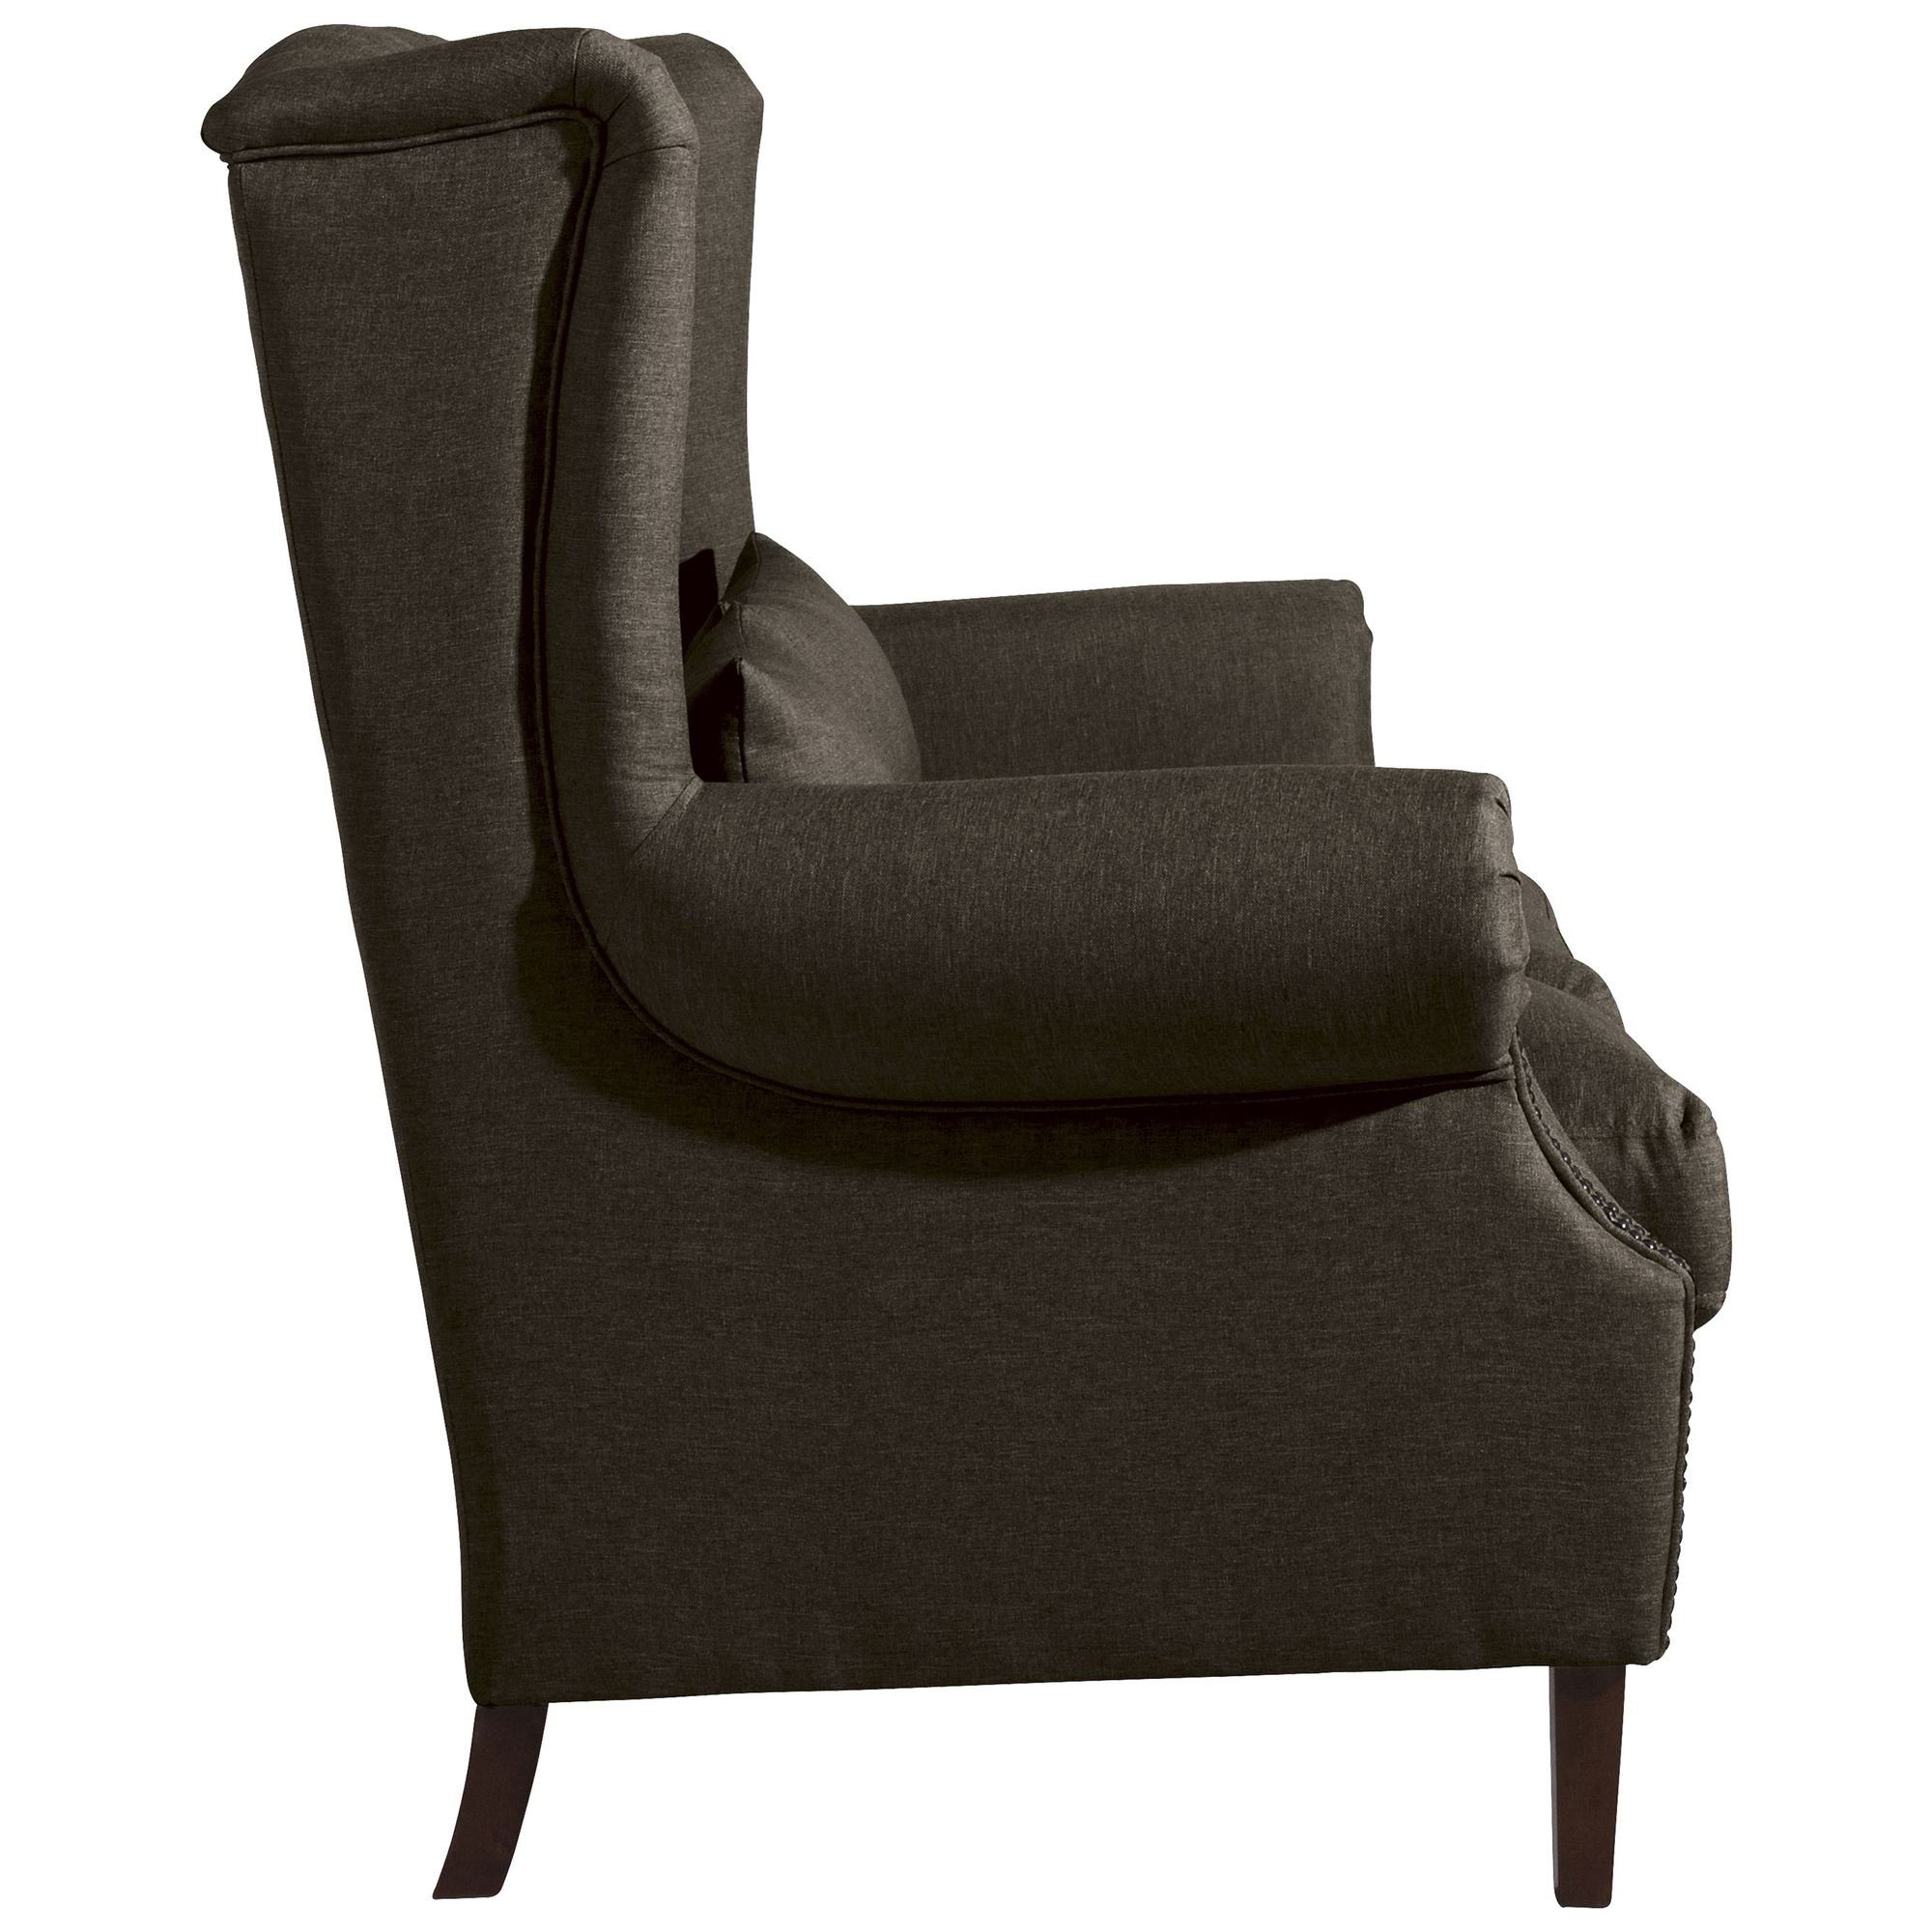 58 Kandy Buche 1 aufm Versand 2-Sitzer verarbeitet,bequemer Sofa Sofa Kostenlosem Sitz Flachgewebe Bezug Sparpreis hochwertig Kessel nussba, Teile, inkl.